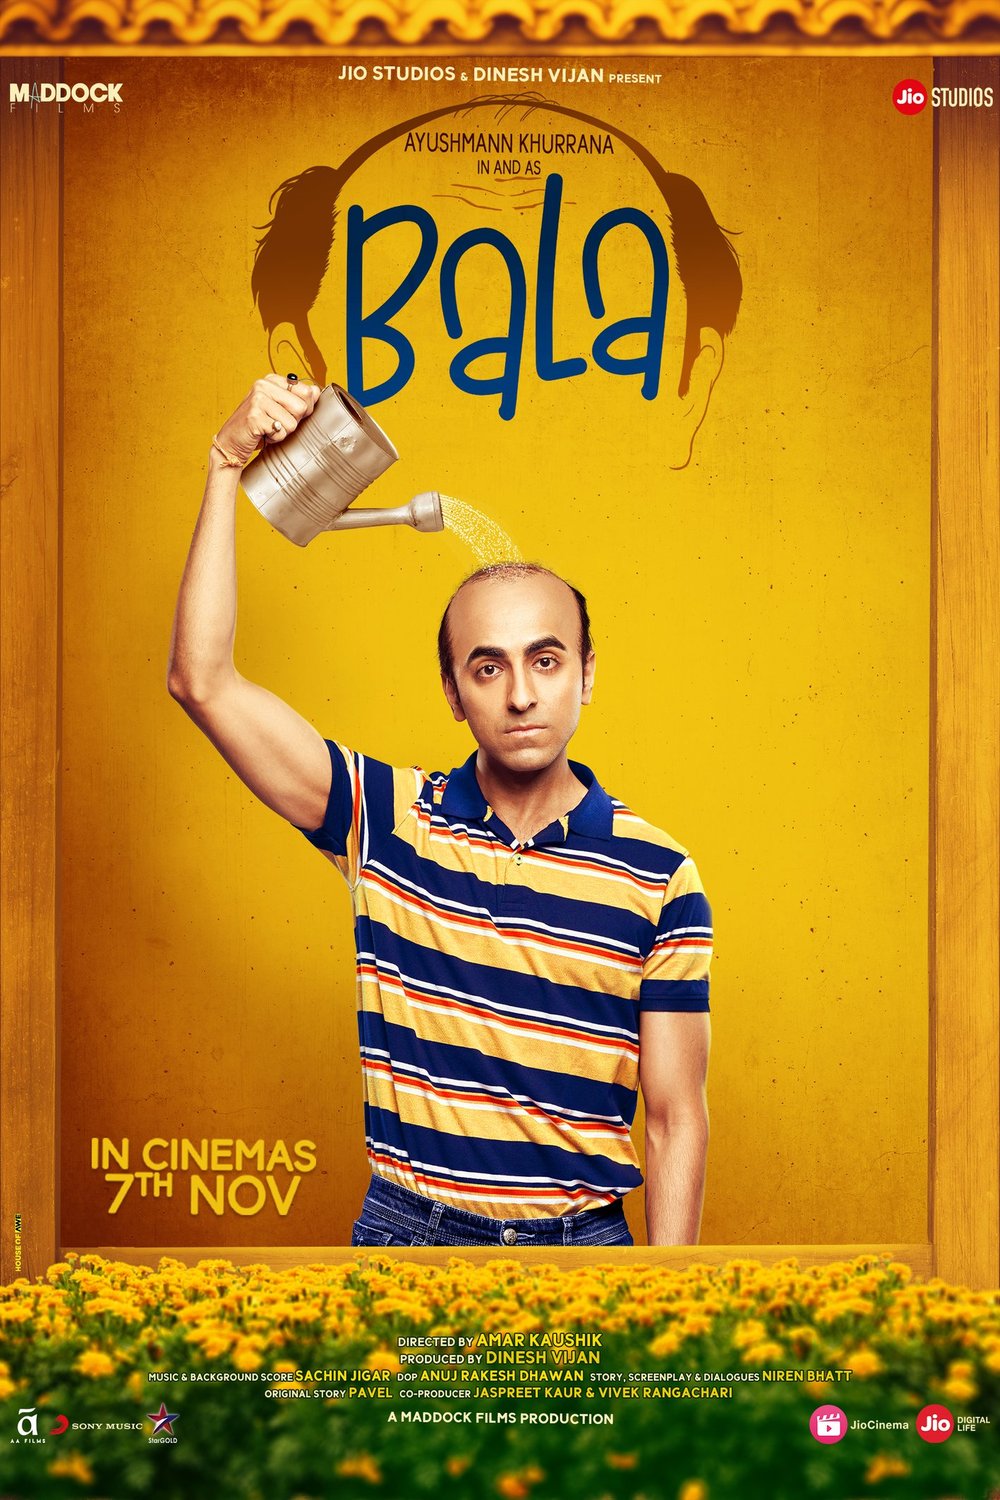 Hindi poster of the movie Bala